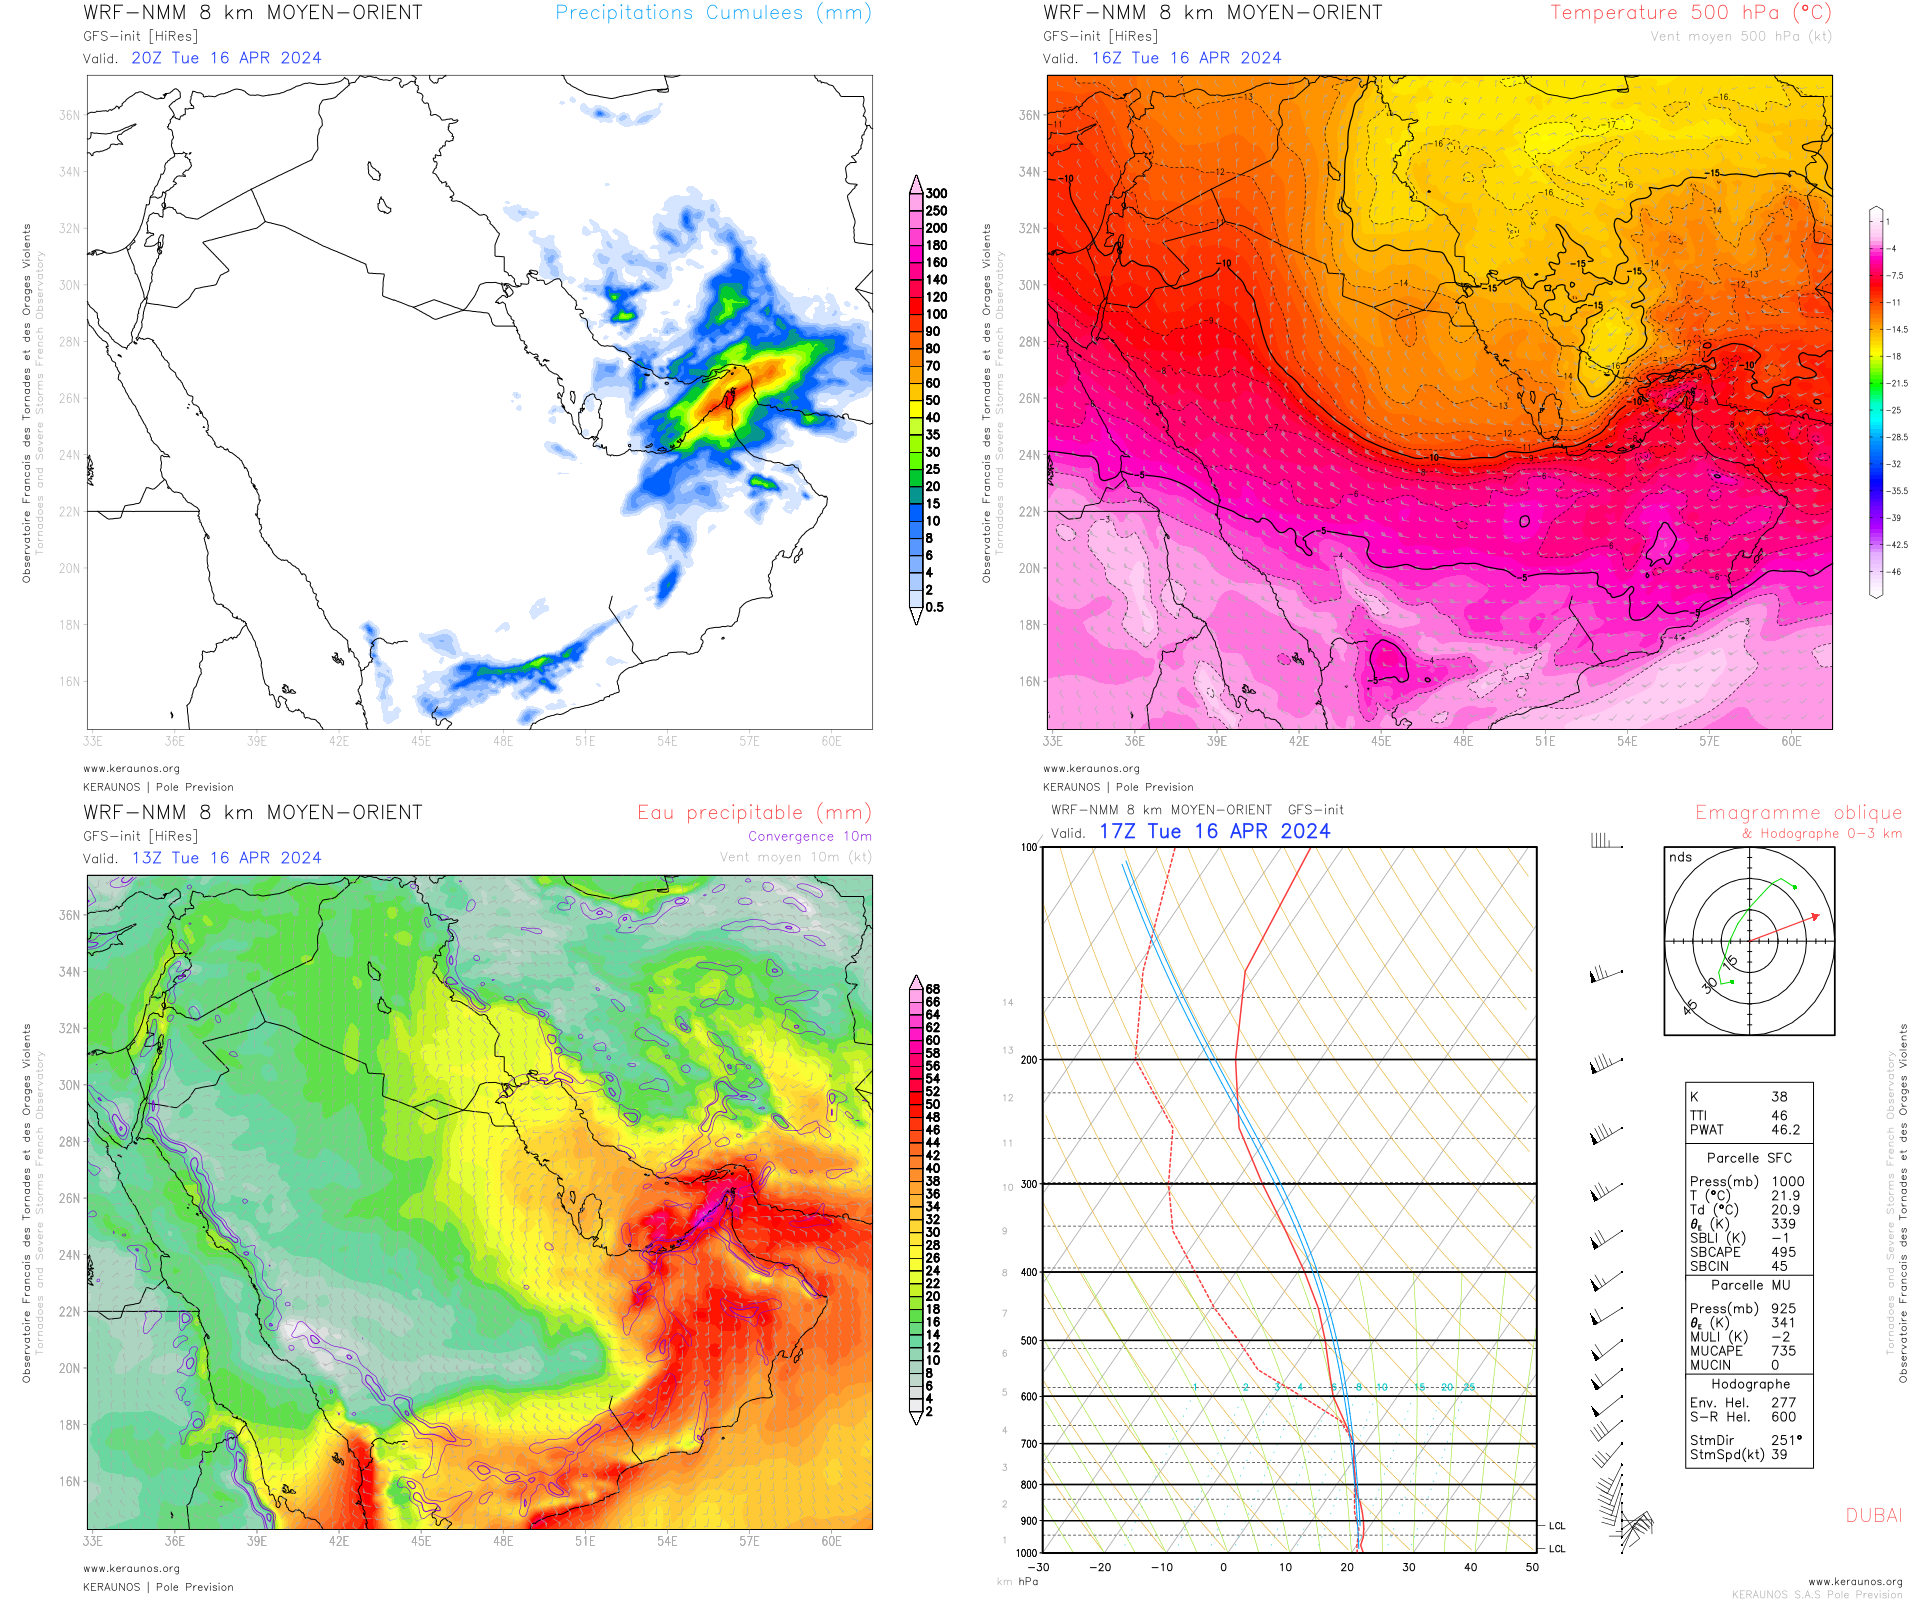 <p>Ces orages sont liés au transit d'une goutte froide dans le Golfe Persique. L'air froid d'altitude a interagi avec une masse d'air subtropicale surchargée en humidité, générant une forte instabilité et un contexte propice à la formation répétée d'orages à fort potentiel pluviométrique. Cartes WRF-NMM Moyen Orient.</p>